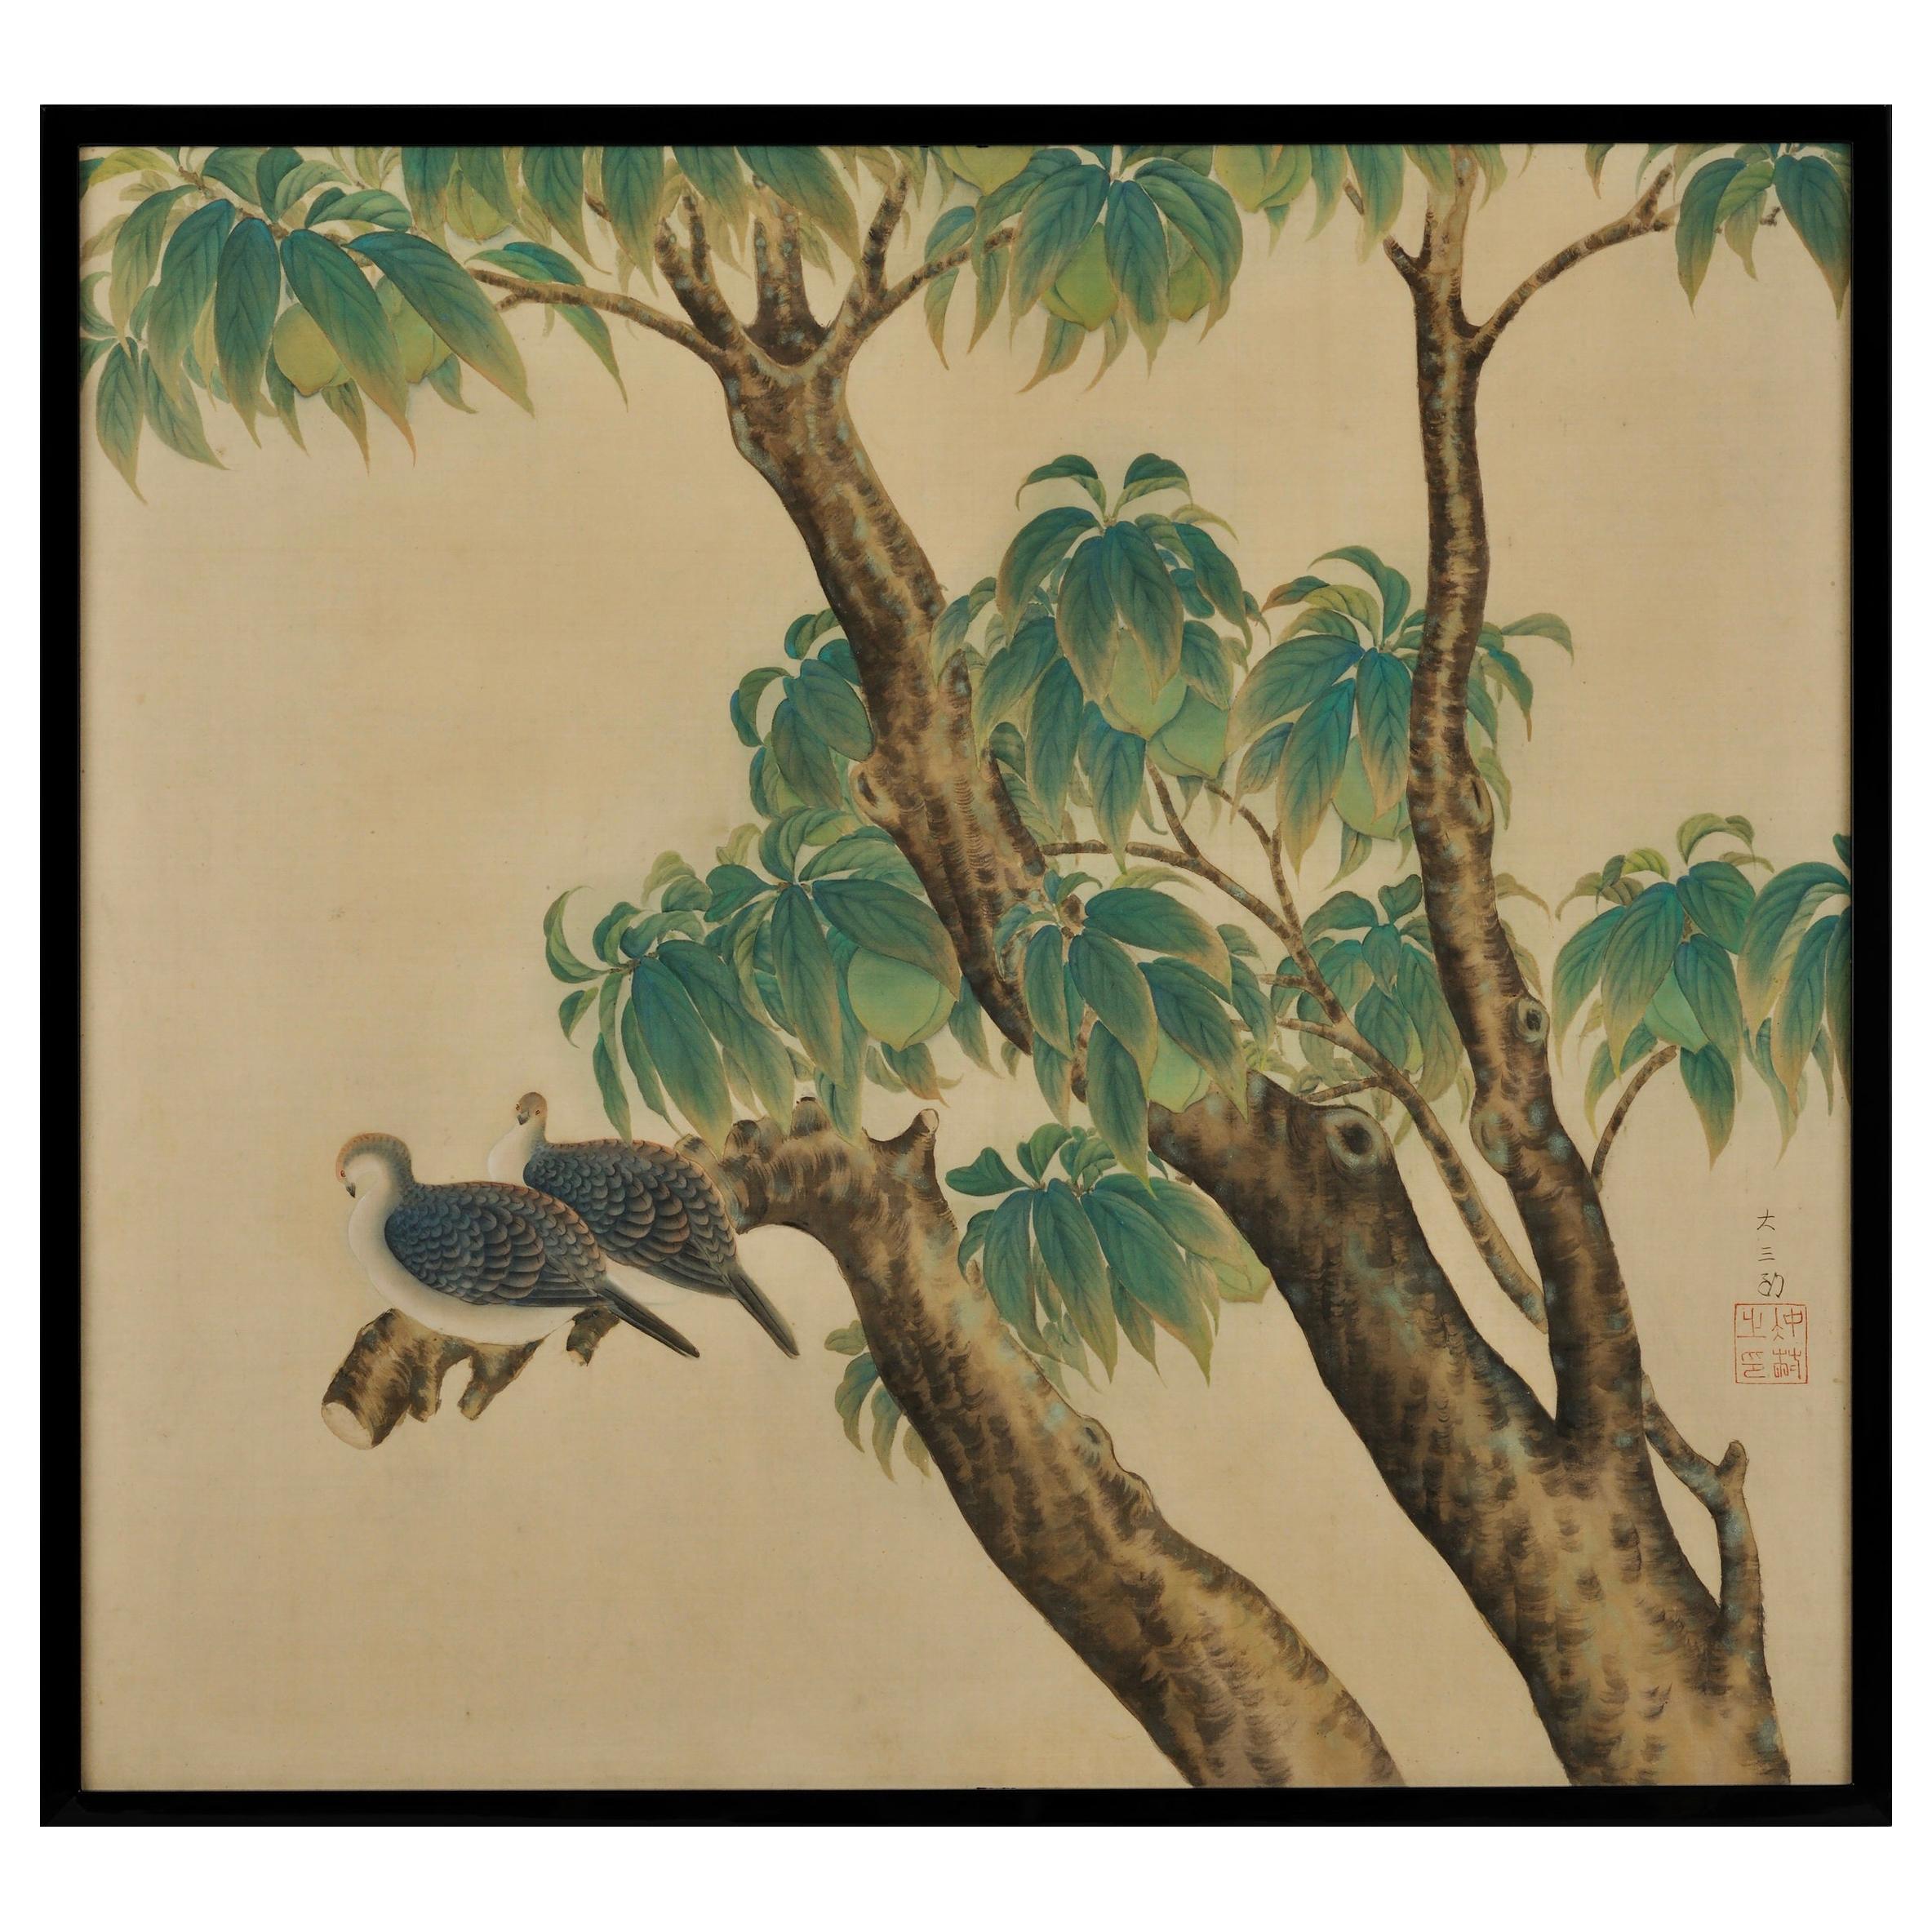 Pintura japonesa sobre seda enmarcada, Tórtolas y melocotones, Época Taisho, hacia 1920